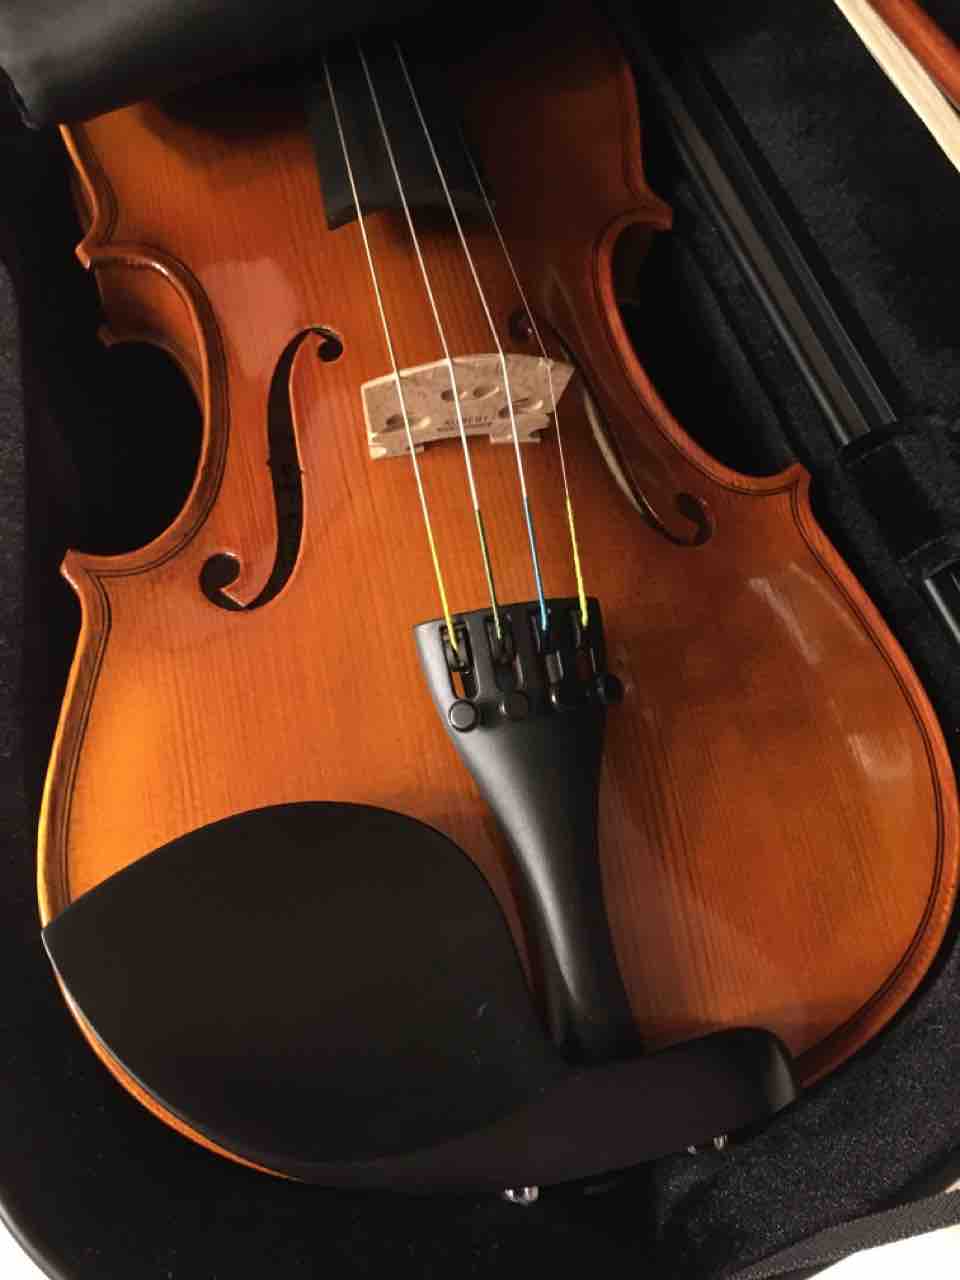 ヴァイオリン練習記1 楽器が持てない 手仕事が好きな事務員の日々のくらし